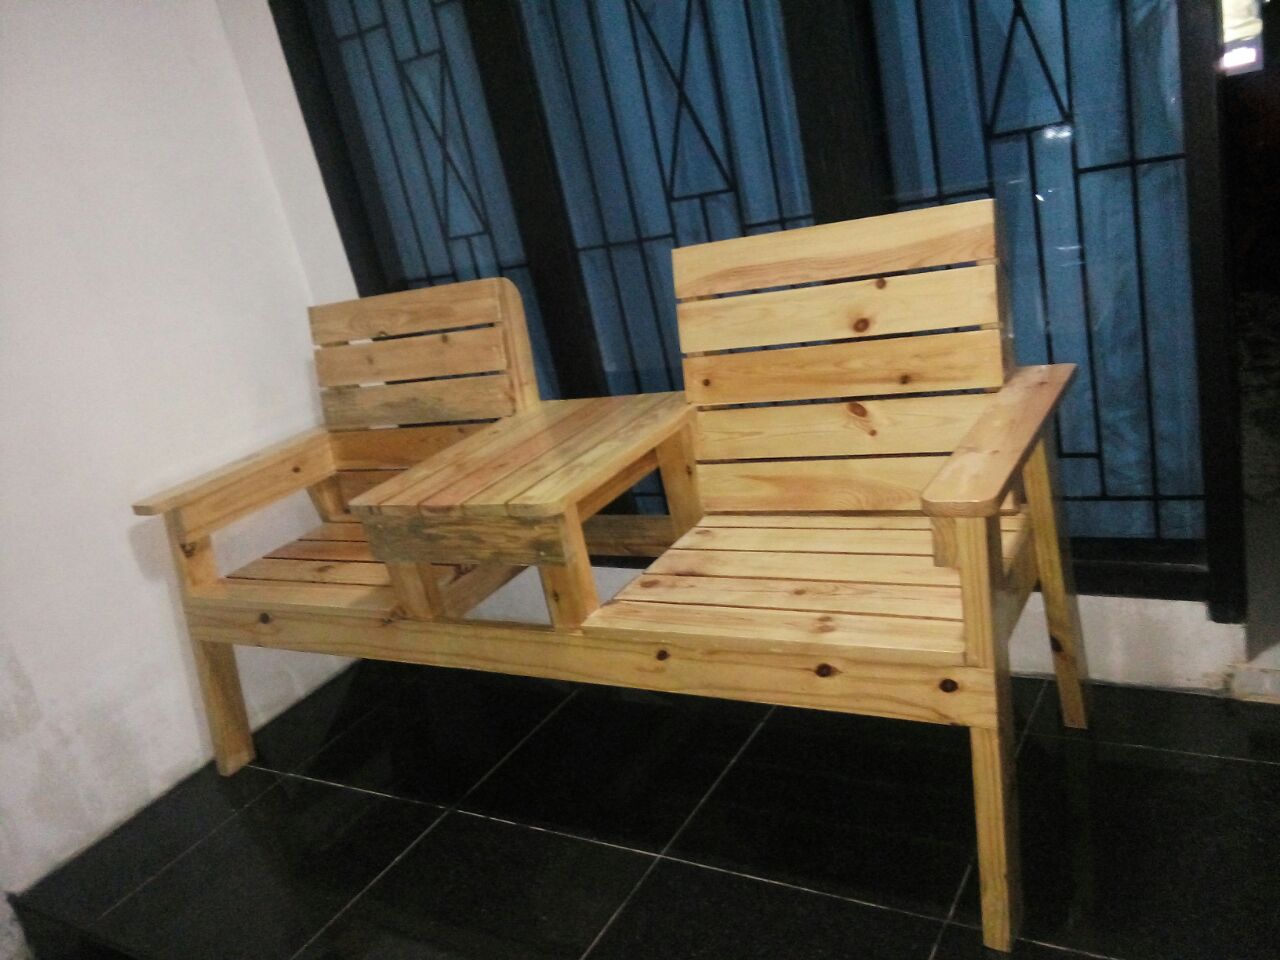 Furniture Kayu Gelondongan Harga Kursi Cafe Plastik Telp Wa 085646229049 Di Gending Probolinggo Jawa Timur